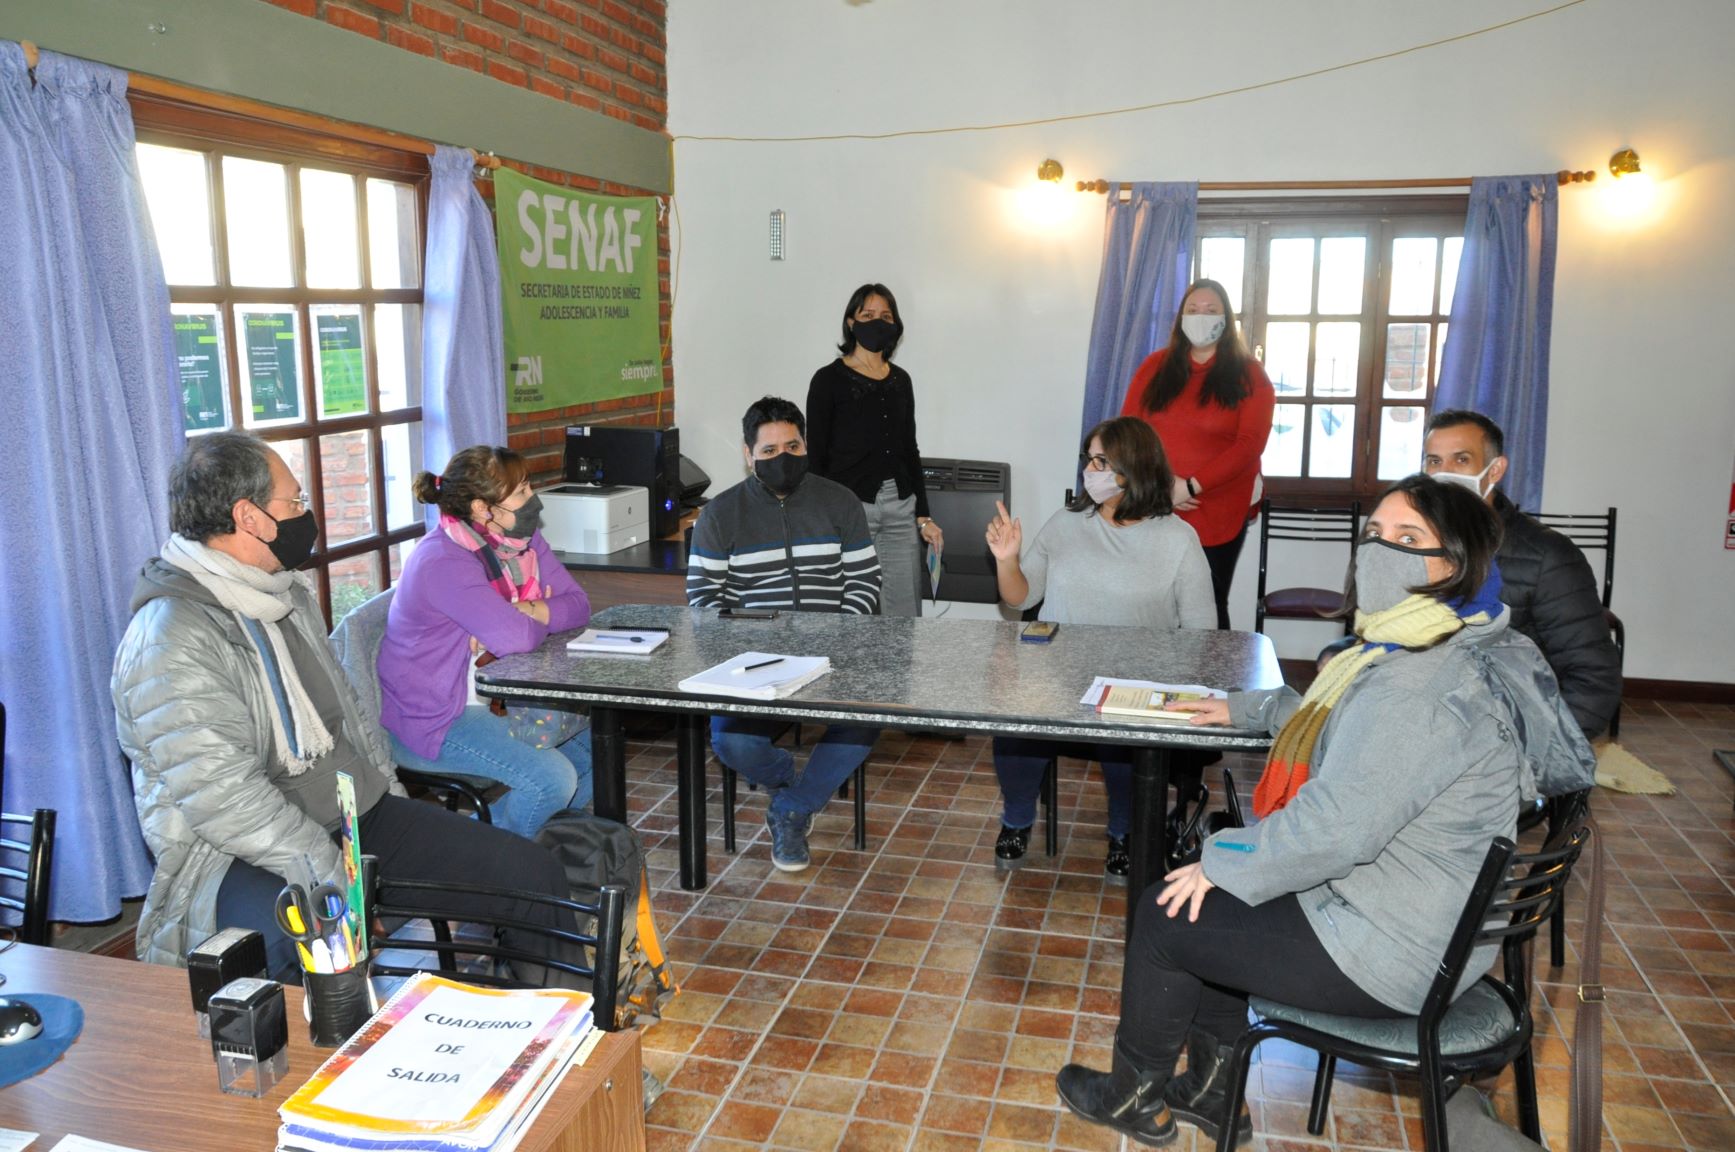 El equipo de la SENAF de Jacobacci articuló acciones y programas para atender la demanda en pandemia. Foto: José Mellado.